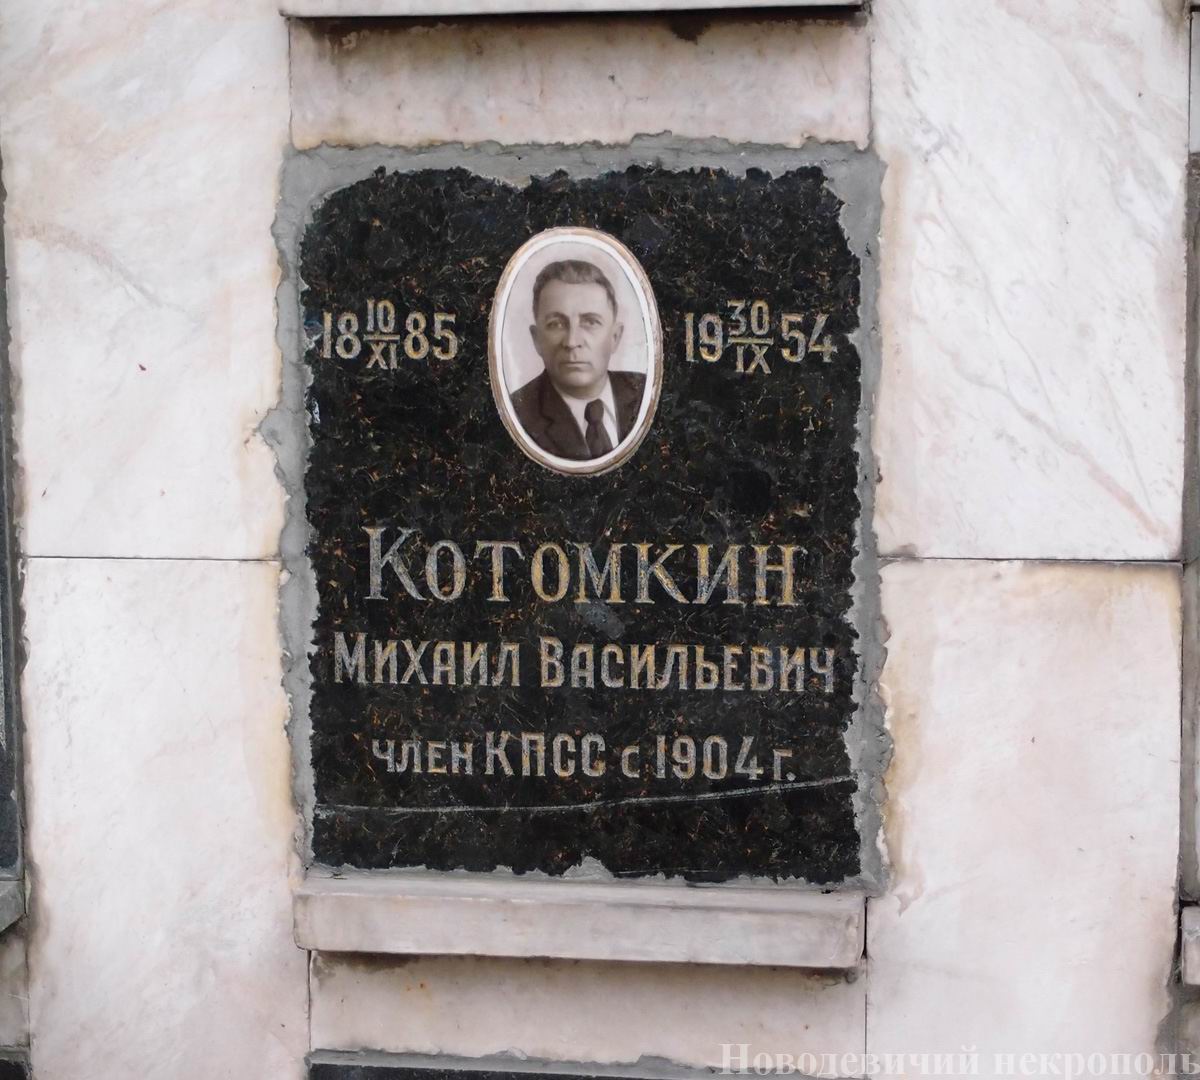 Плита на нише Котомкина М.В. (1885-1954), на Новодевичьем кладбище (колумбарий [108]-4-3).